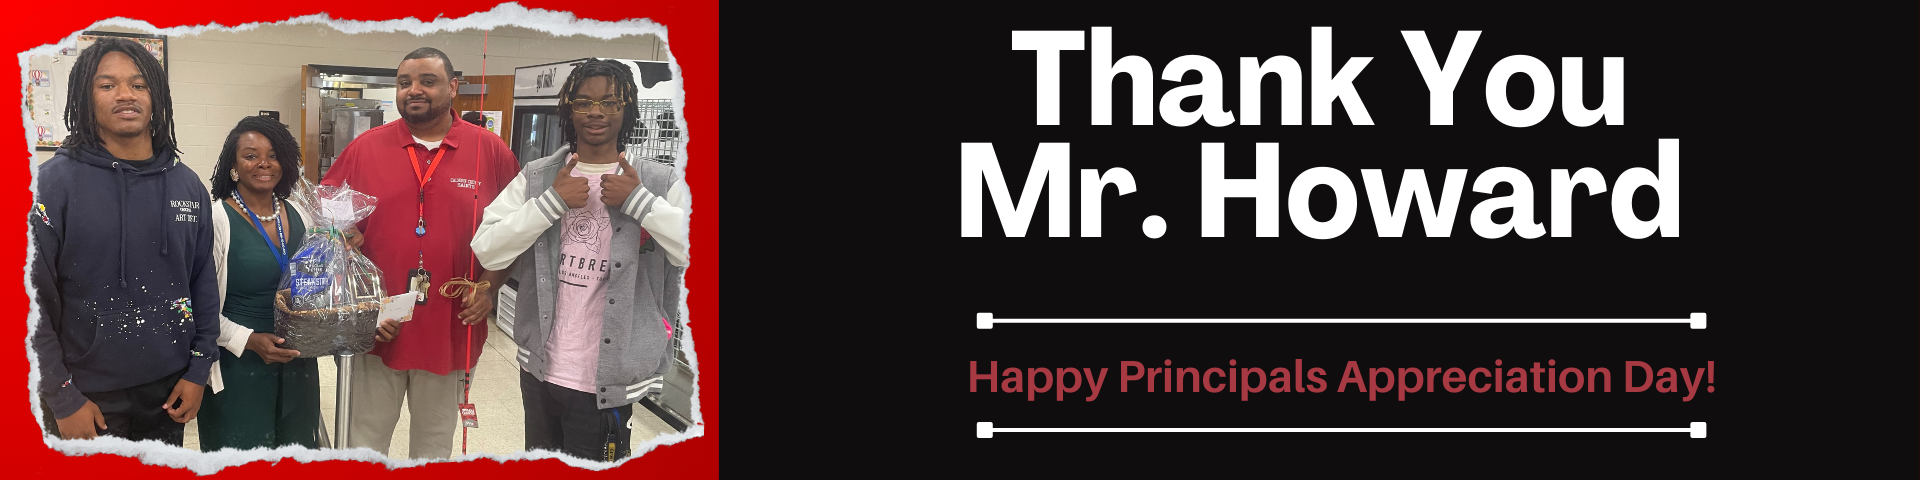 Principals Appreciation Day